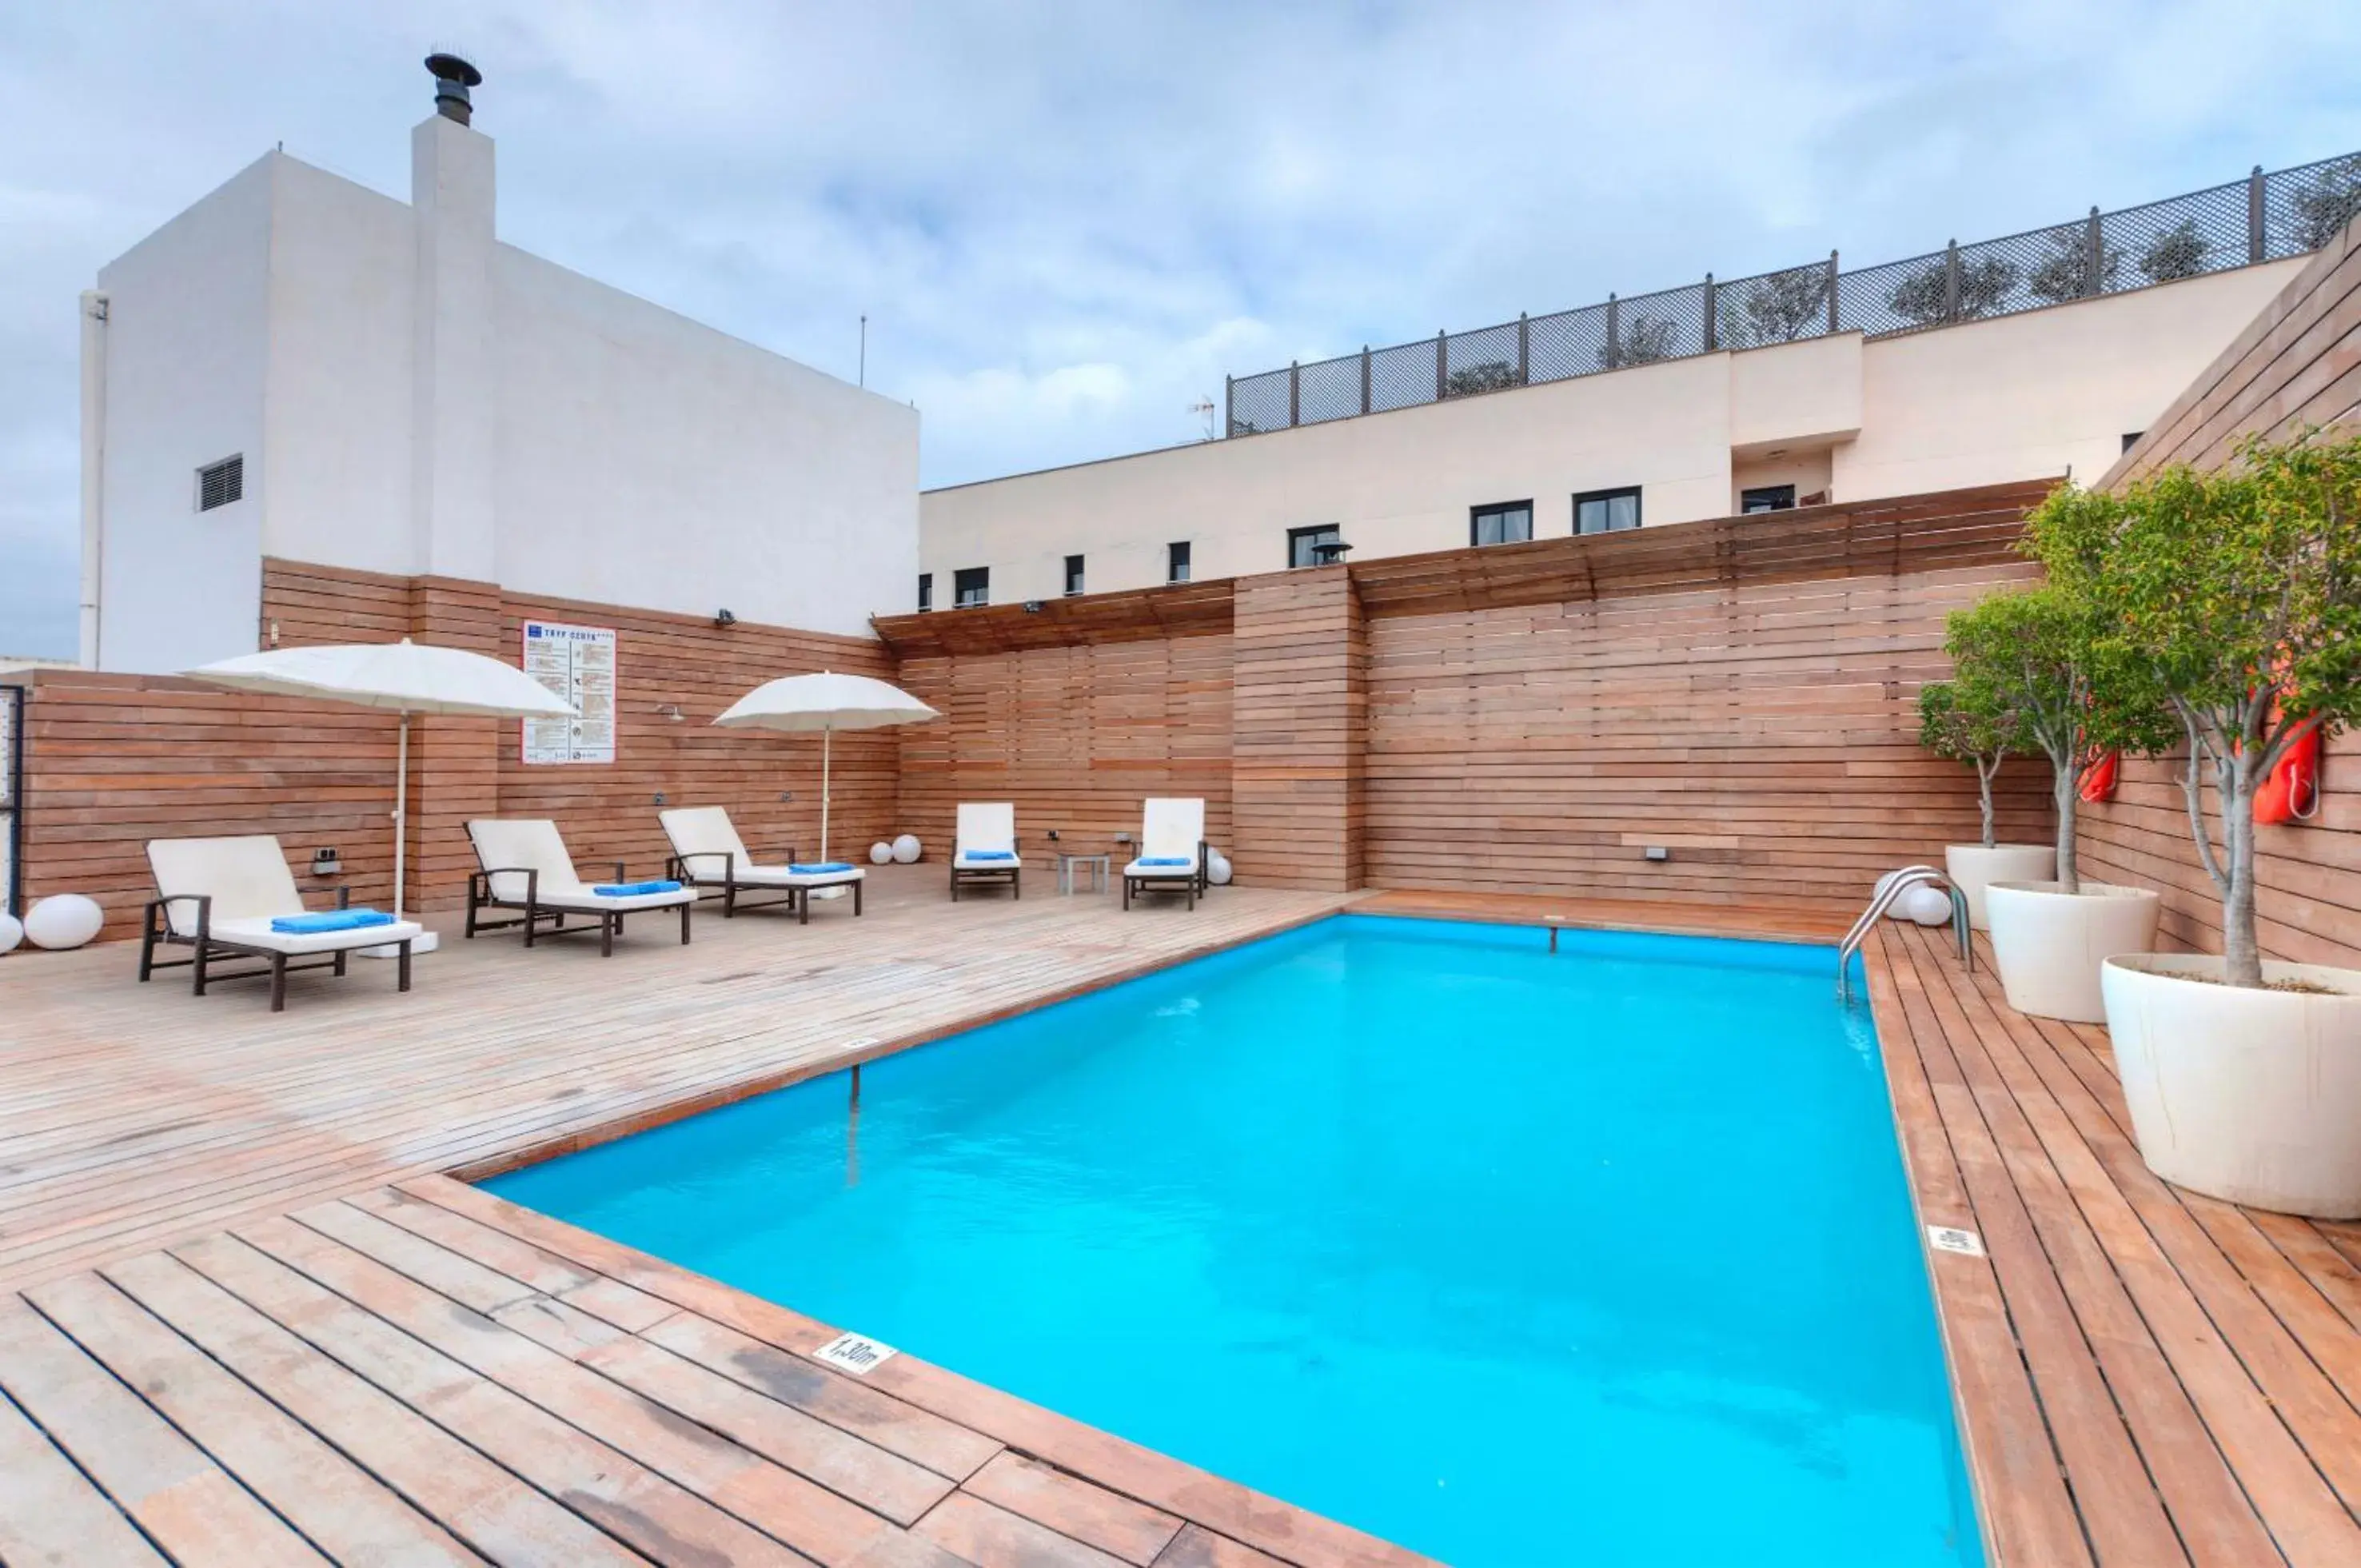 Solarium, Swimming Pool in Hotel Ceuta Puerta de Africa